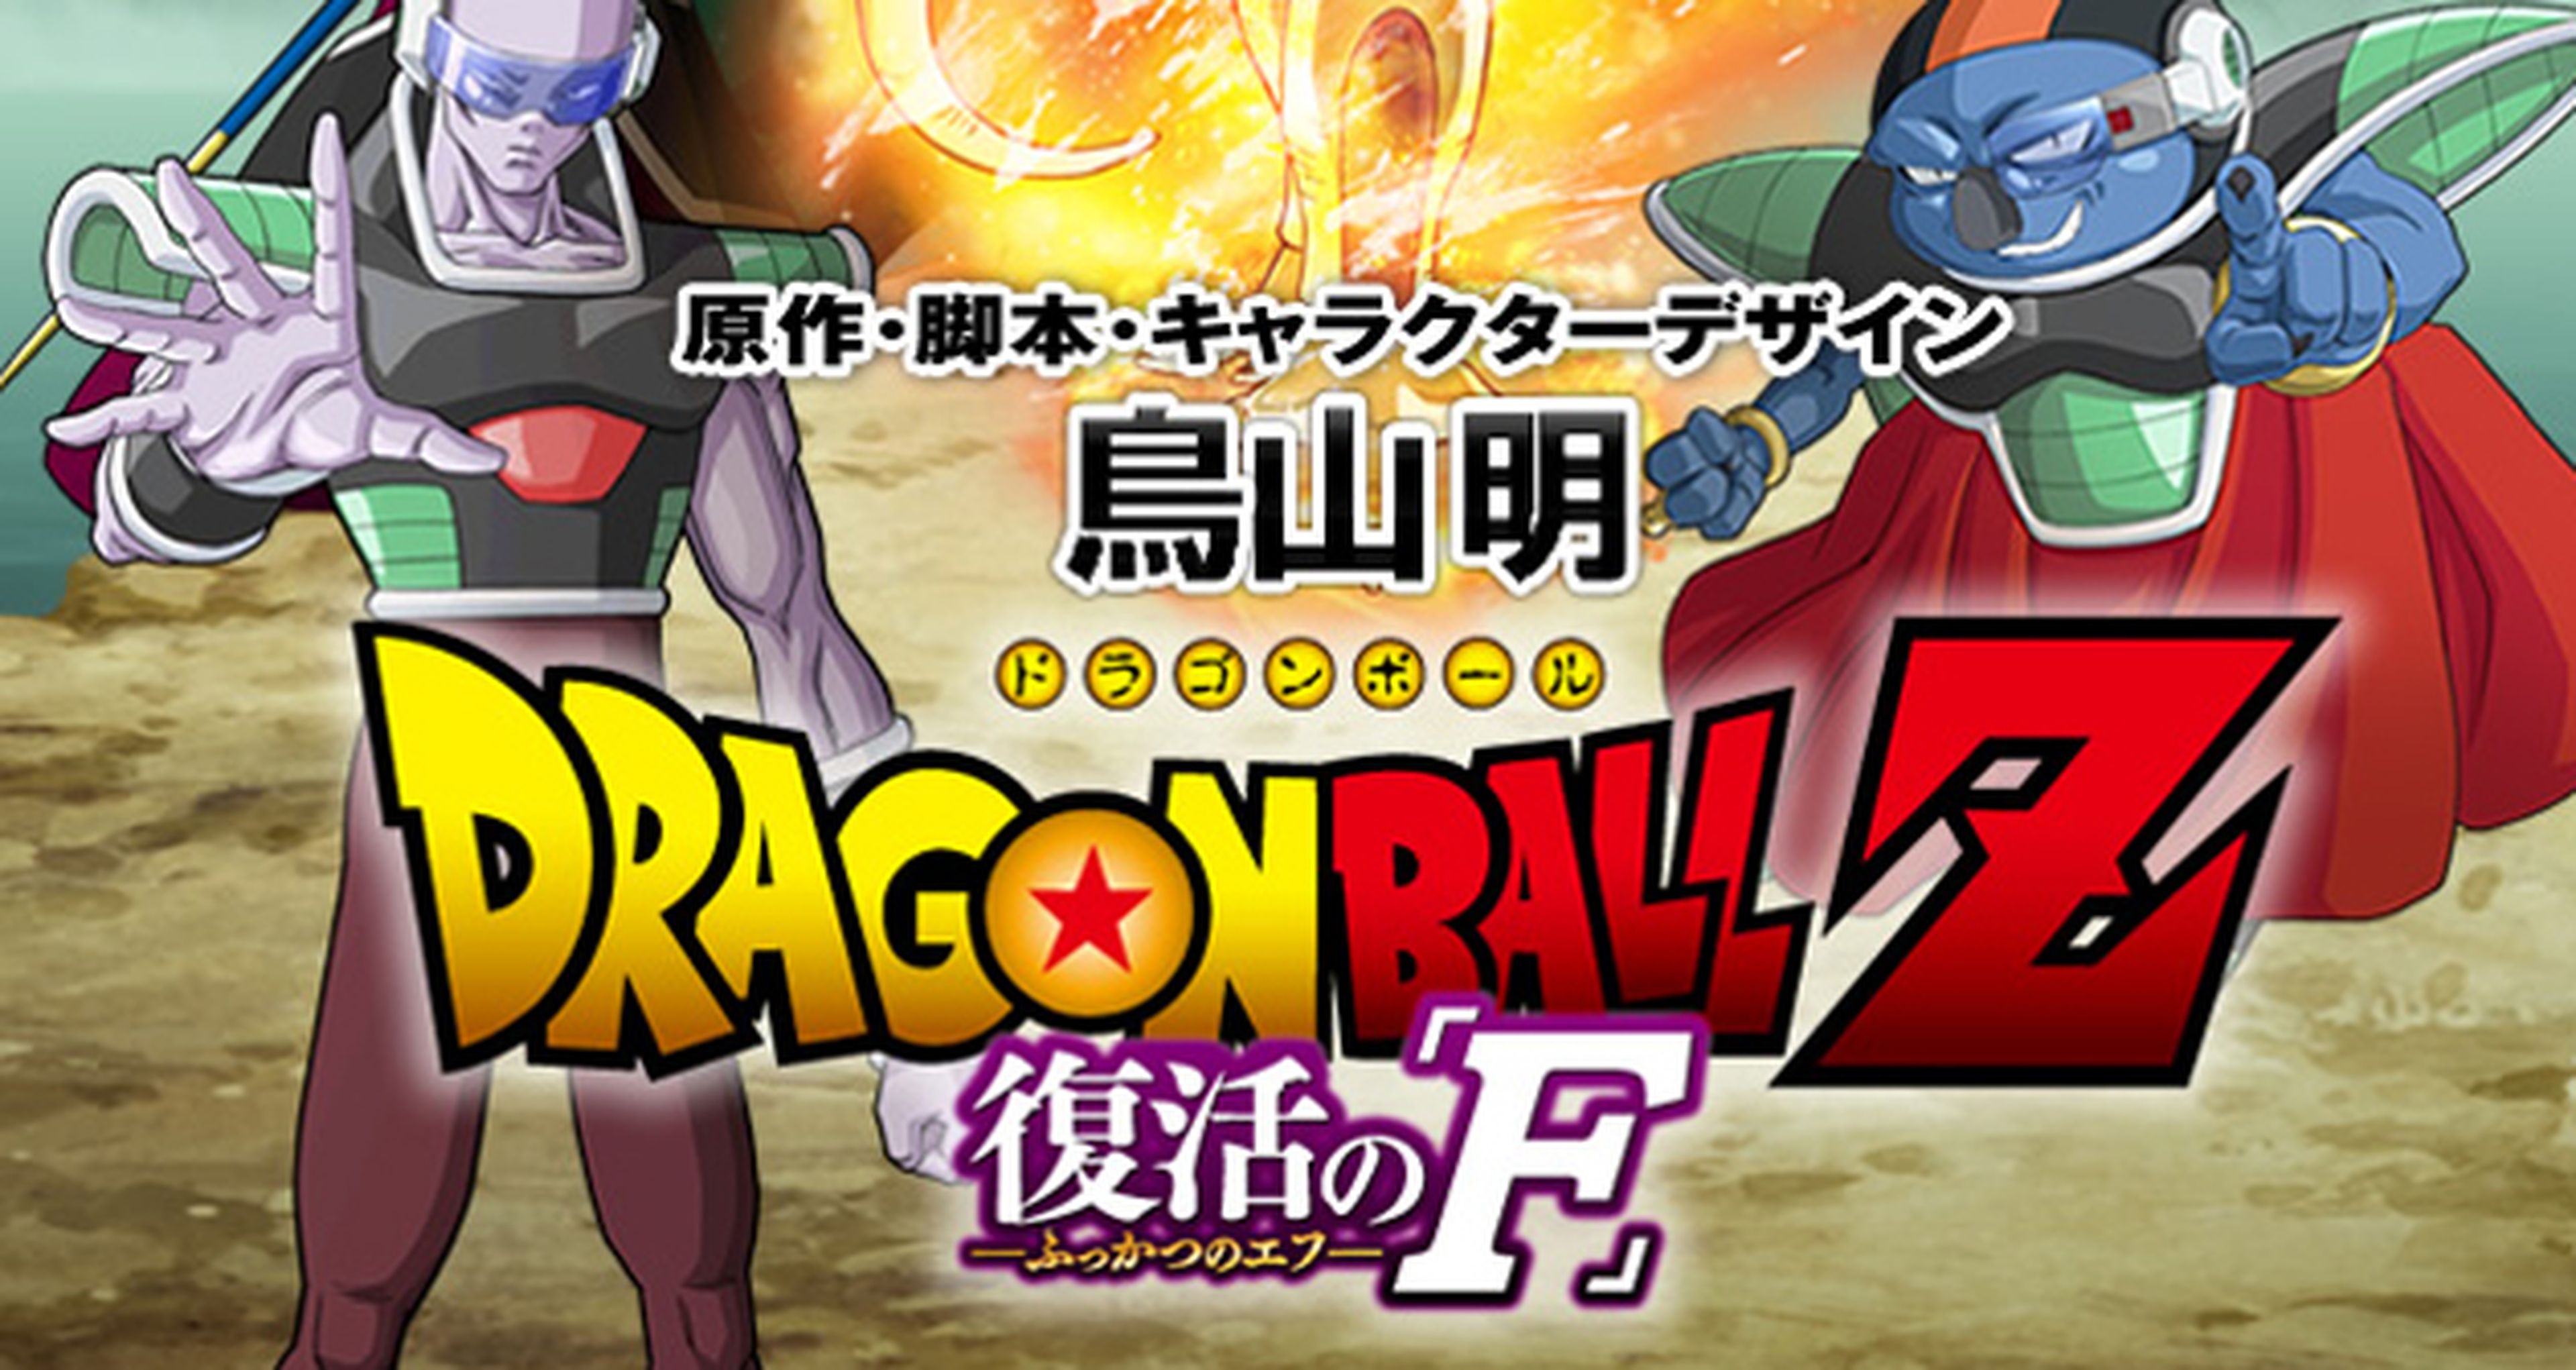 Dragon Ball Z Fukkatsu no F muestra una nueva imagen del arte de la película